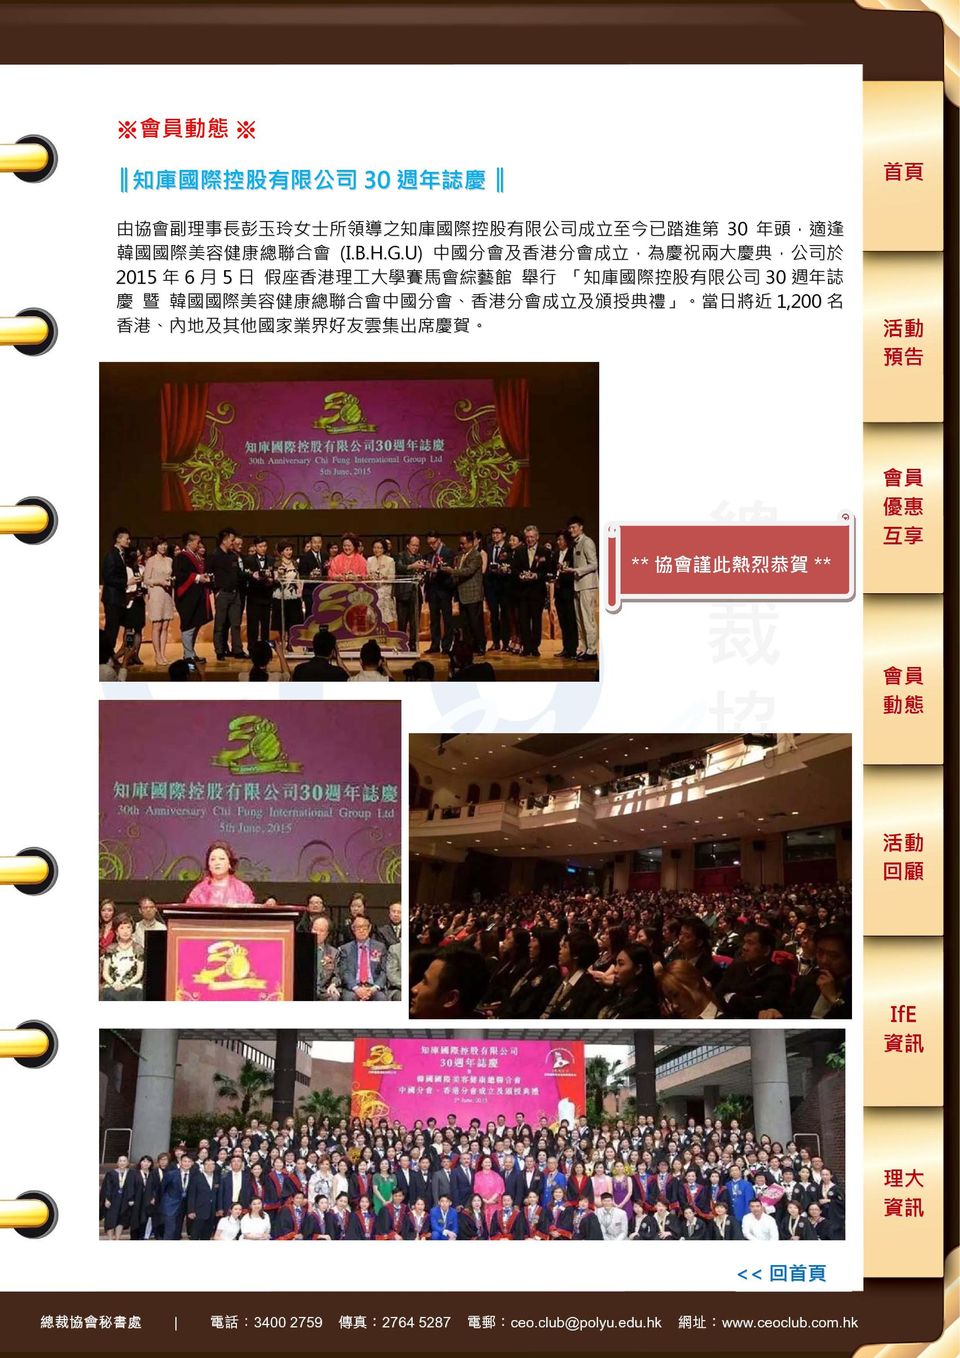 U) 中 國 分 會 及 香 港 分 會 成 立, 為 慶 祝 兩 大 慶 典, 公 司 於 2015 年 6 月 5 日 假 座 香 港 理 工 大 學 賽 馬 會 綜 藝 館 舉 行 知 庫 國 際